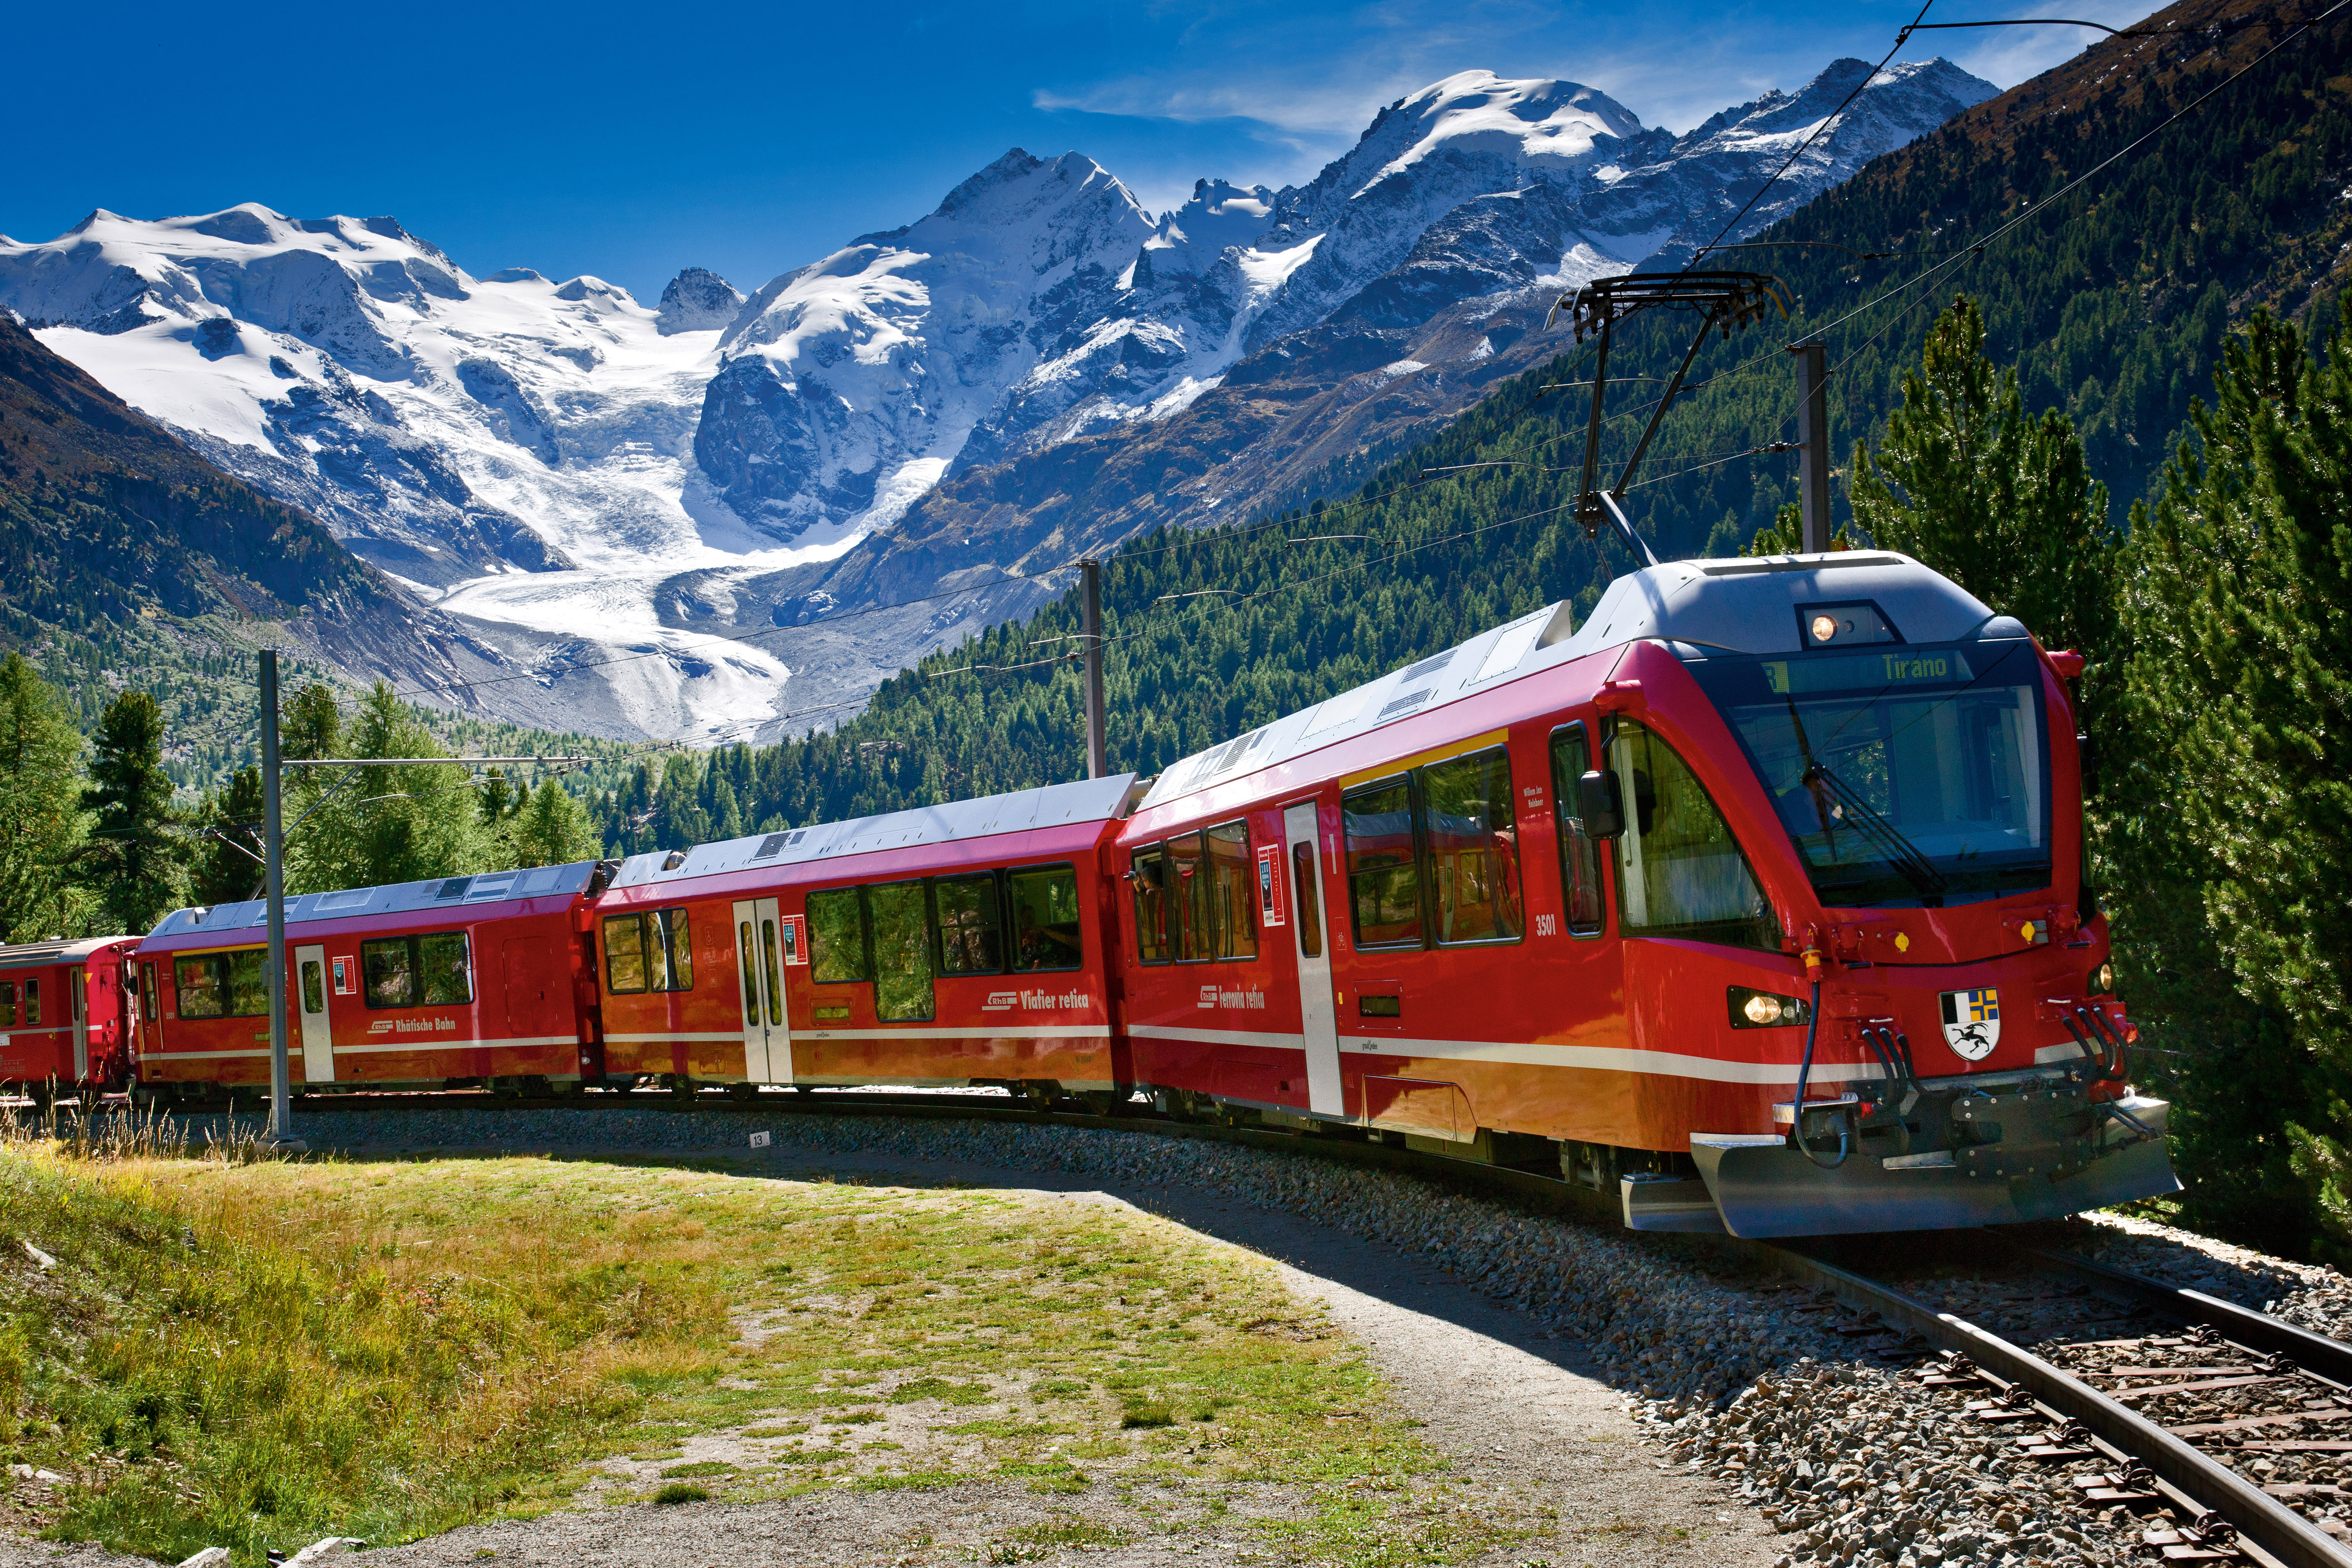 Туры на жд поездах. Швейцария — Италия, "Бернина-экспресс". Панорамный поезд Bernina Express. Поезд Тирано Швейцария. Панорамный поезд в Швейцарии Бернина.